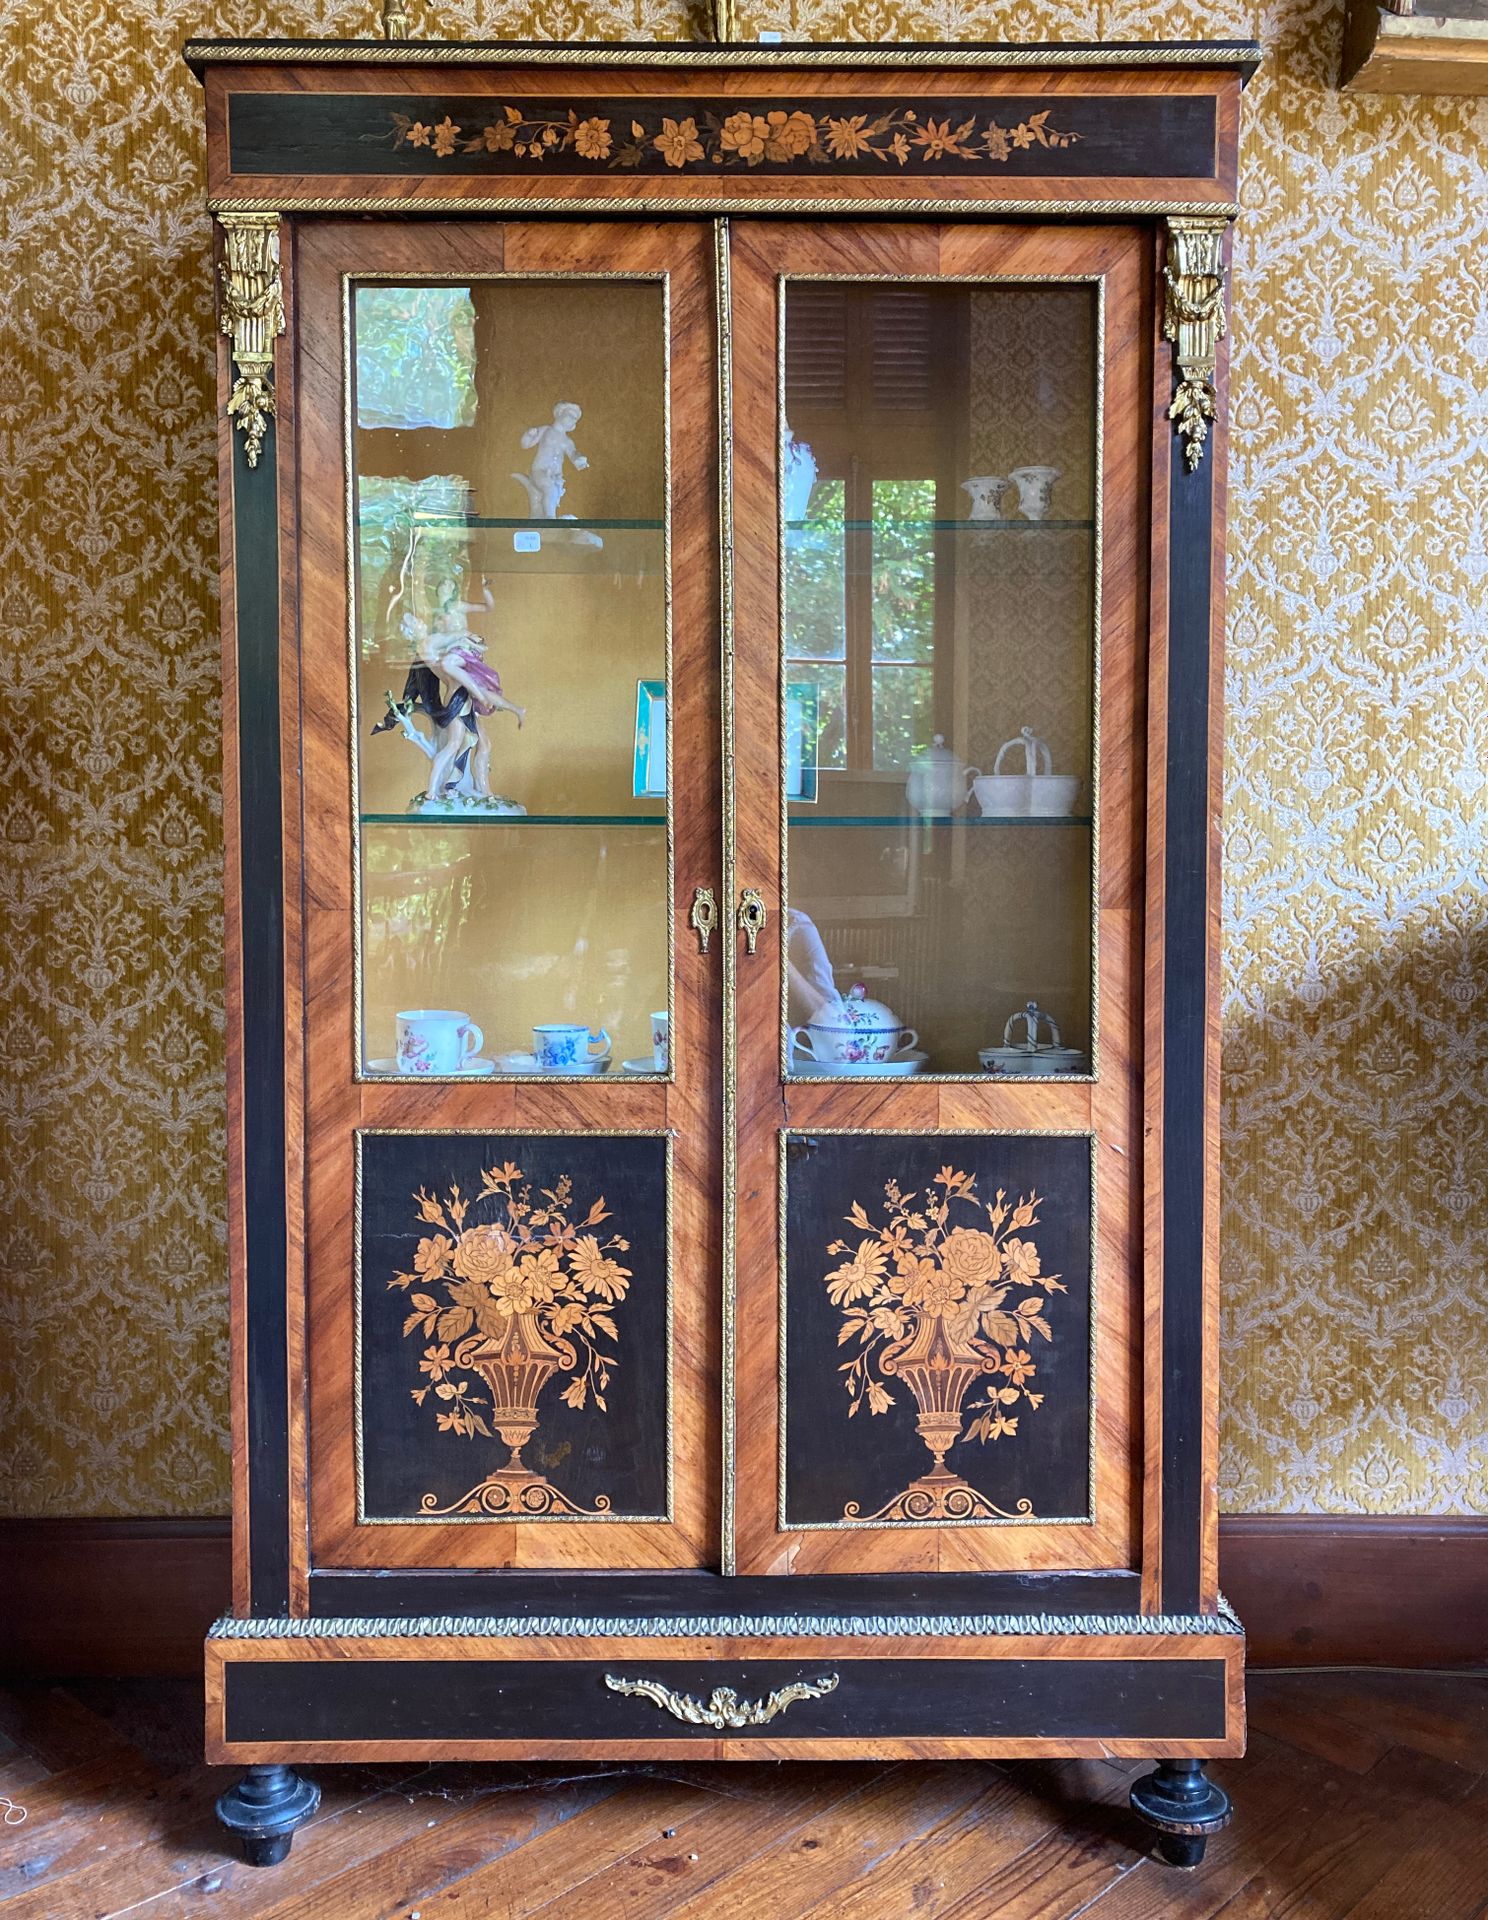 Null 1.长方形贴面展示柜，开有两扇玻璃门，木质装饰，丰富的花纹镶嵌，黑底的花盆。

拿破仑三世时期。

身高：155厘米。